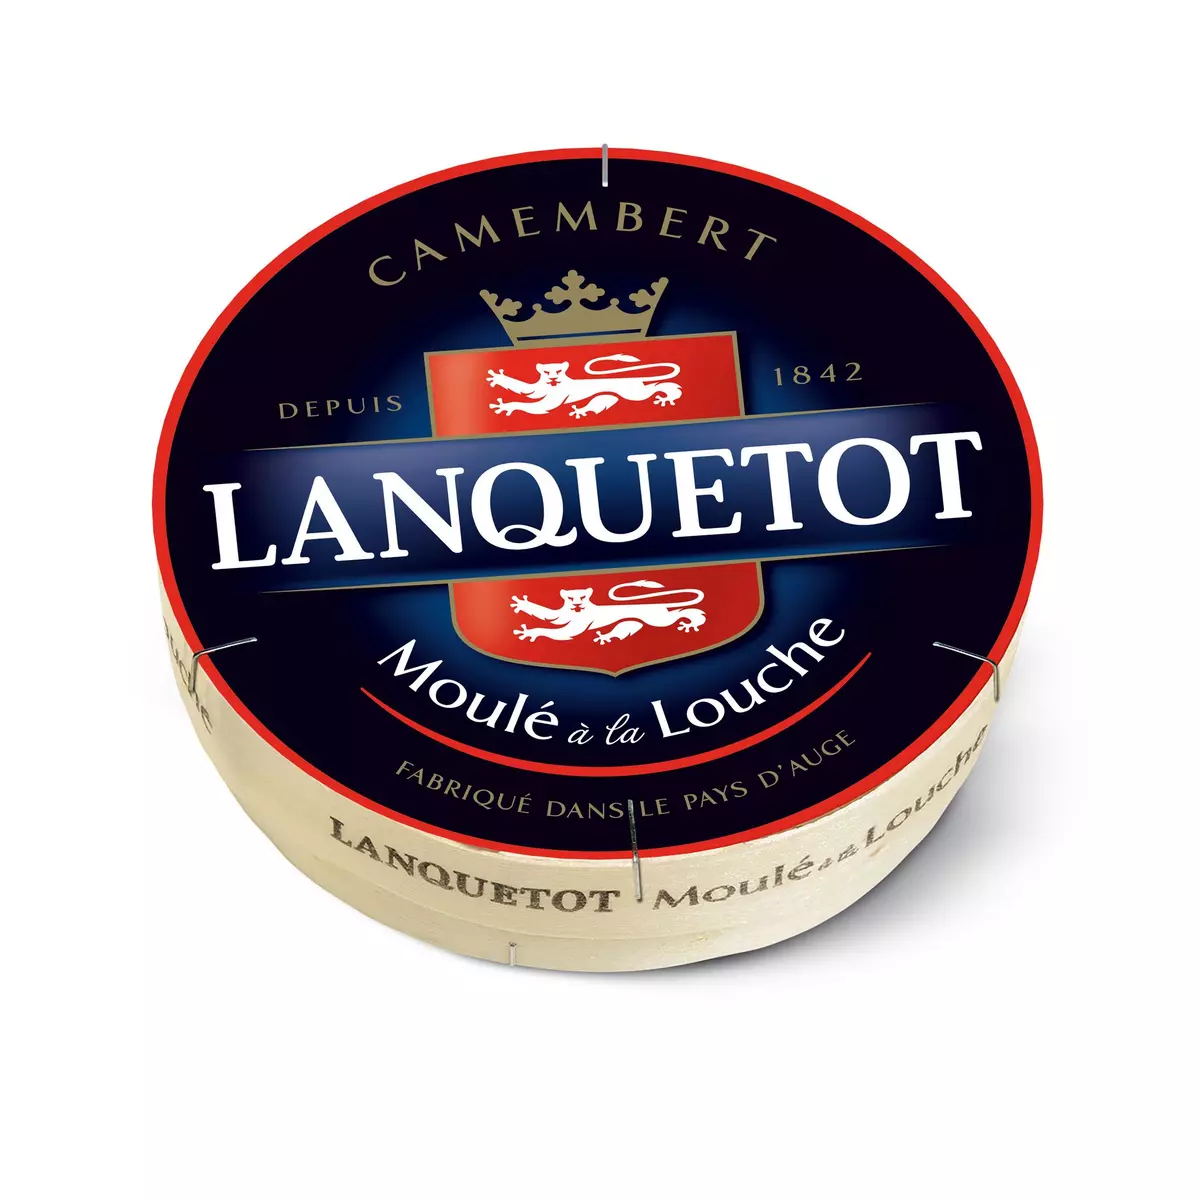 LANQUETOT Camembert moulé à la louche 250g